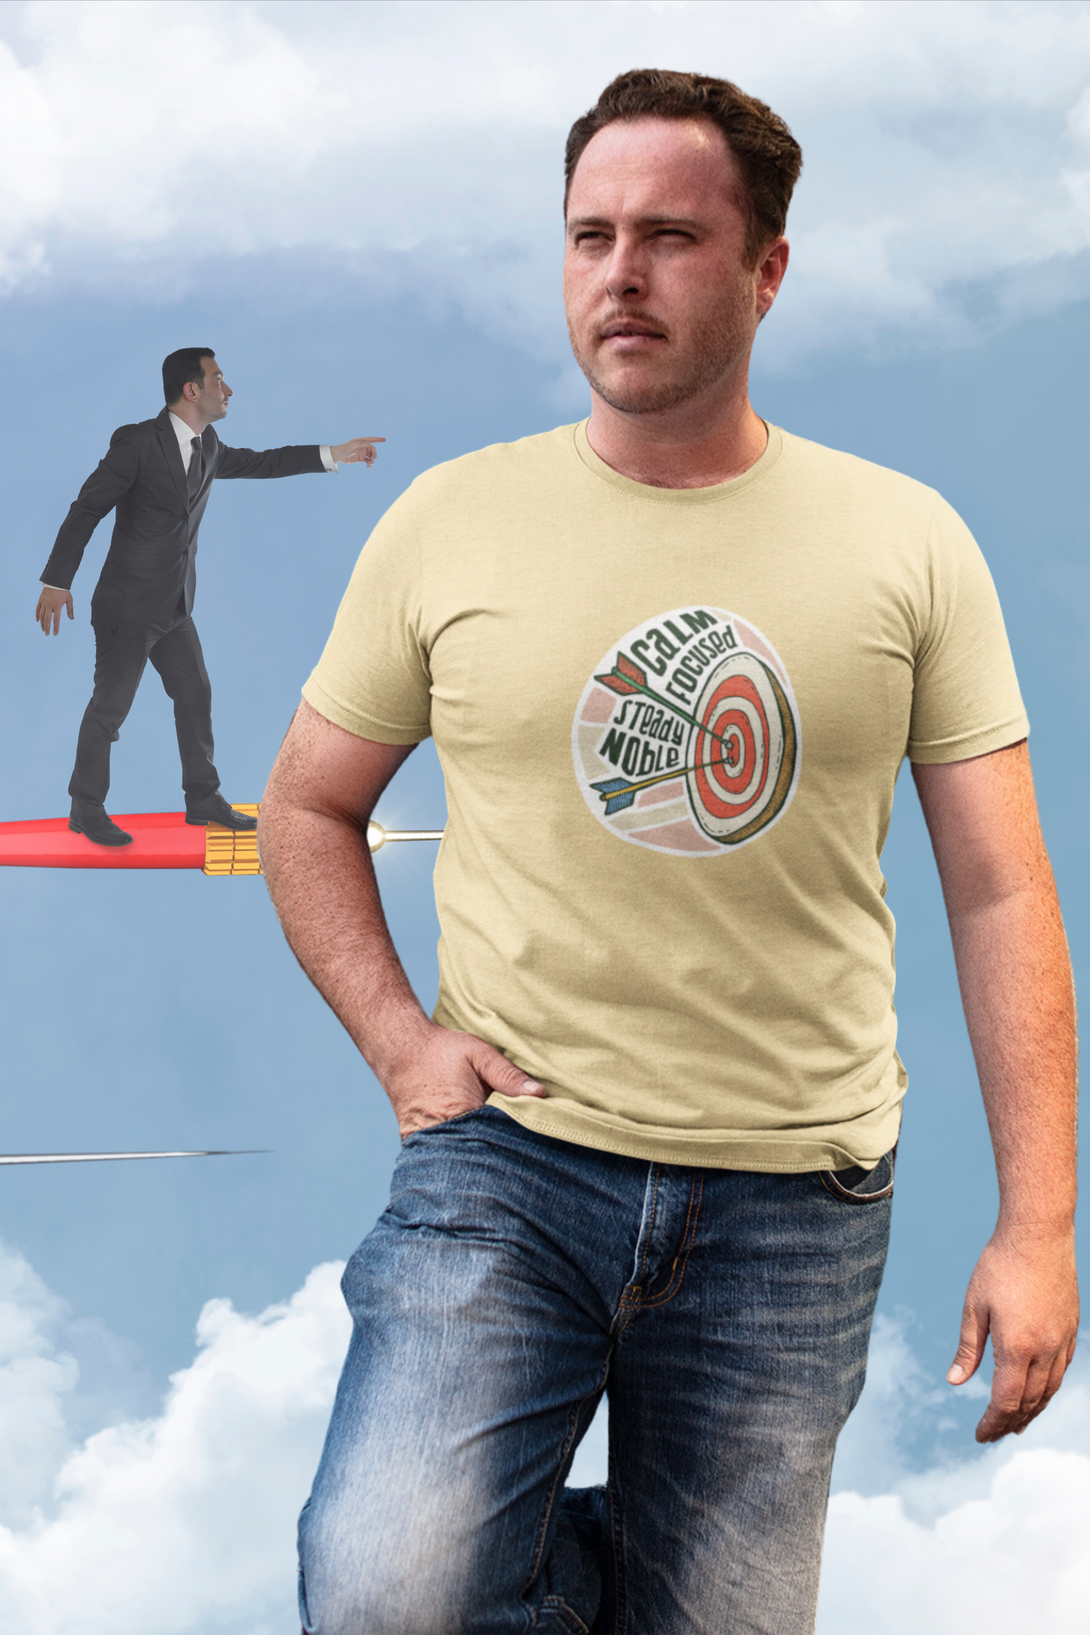 Bullseye Printed T-Shirt For Men - WowWaves - 4